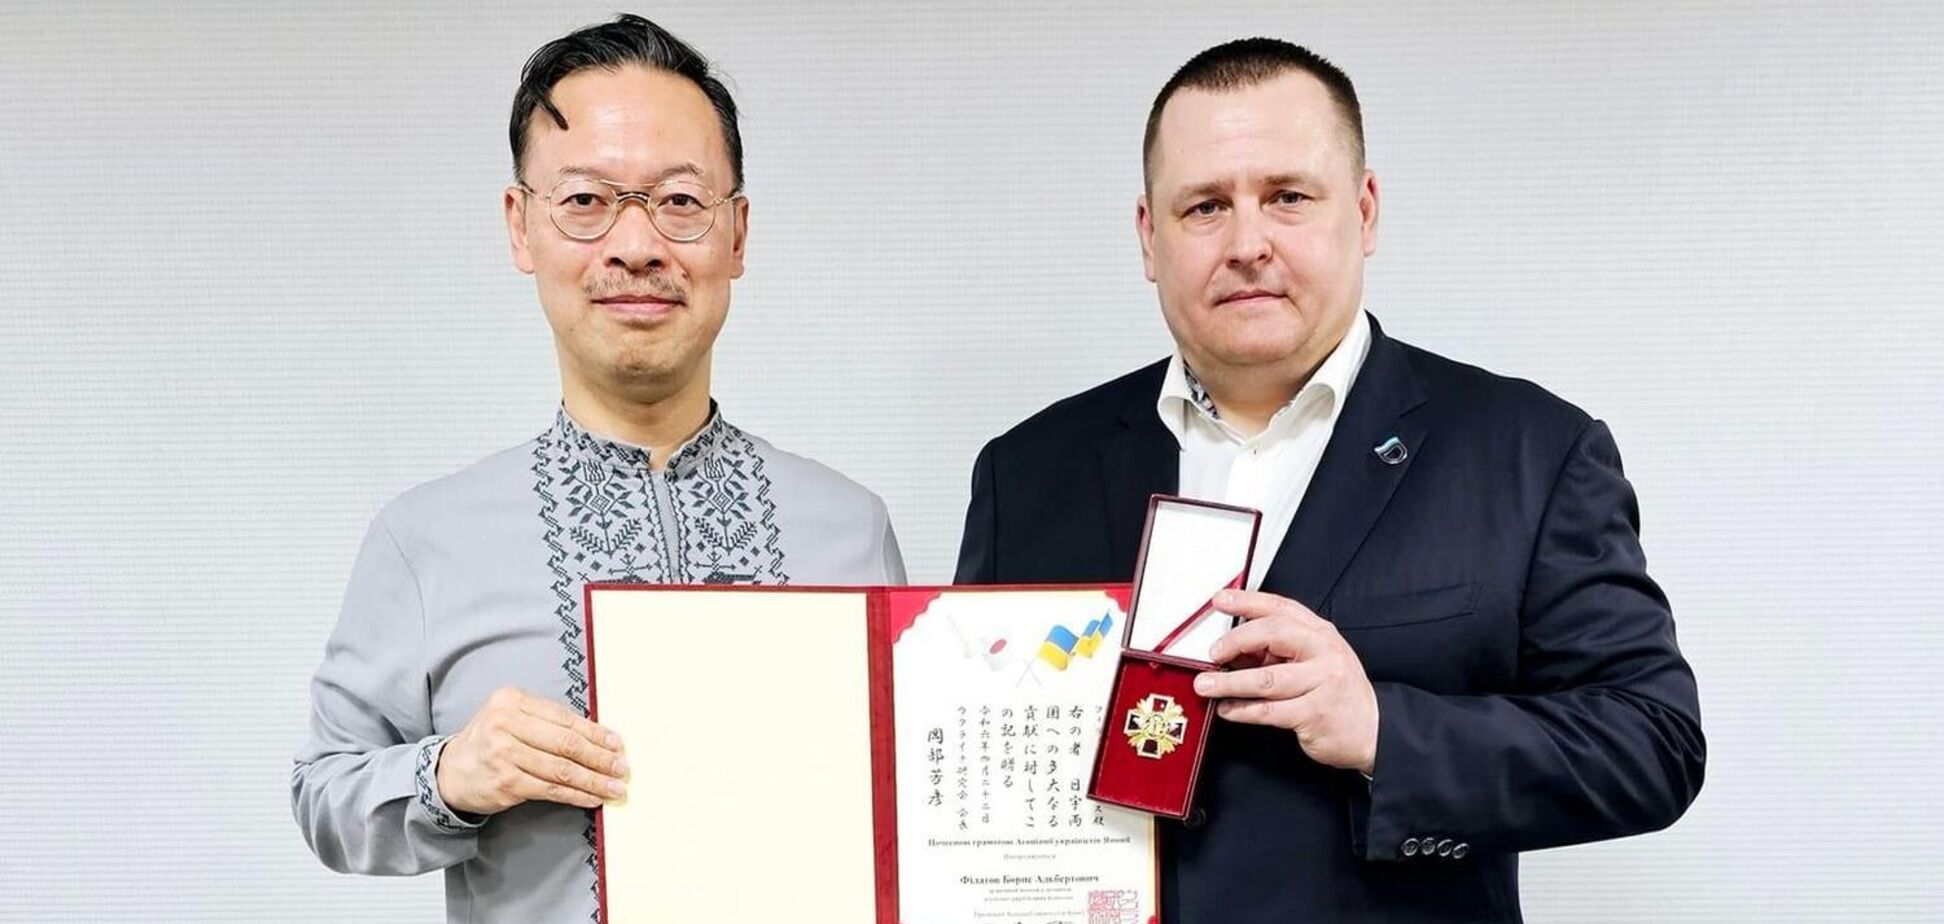 Профессор и украинист Окабе Йошихико вручил мэру Днепра Филатову награду за развитие украино-японских отношений